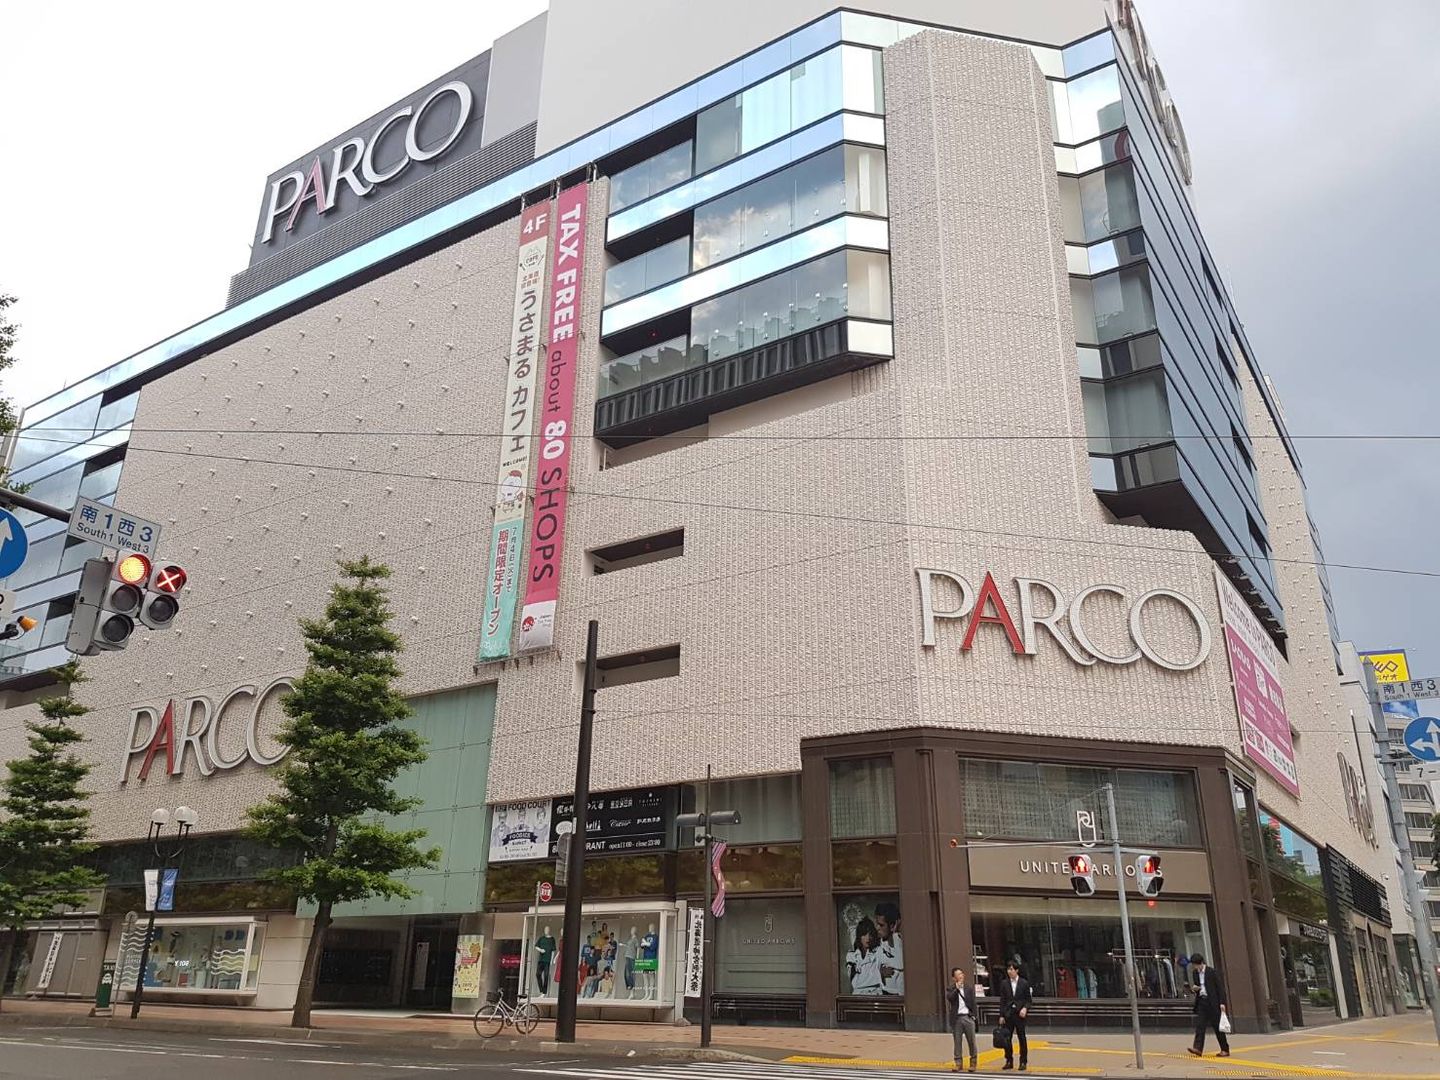 札幌人推薦 札幌parco 逛到捨不得離開 4大熱門逛街區域超強分析 日本 北海道 旅行酒吧